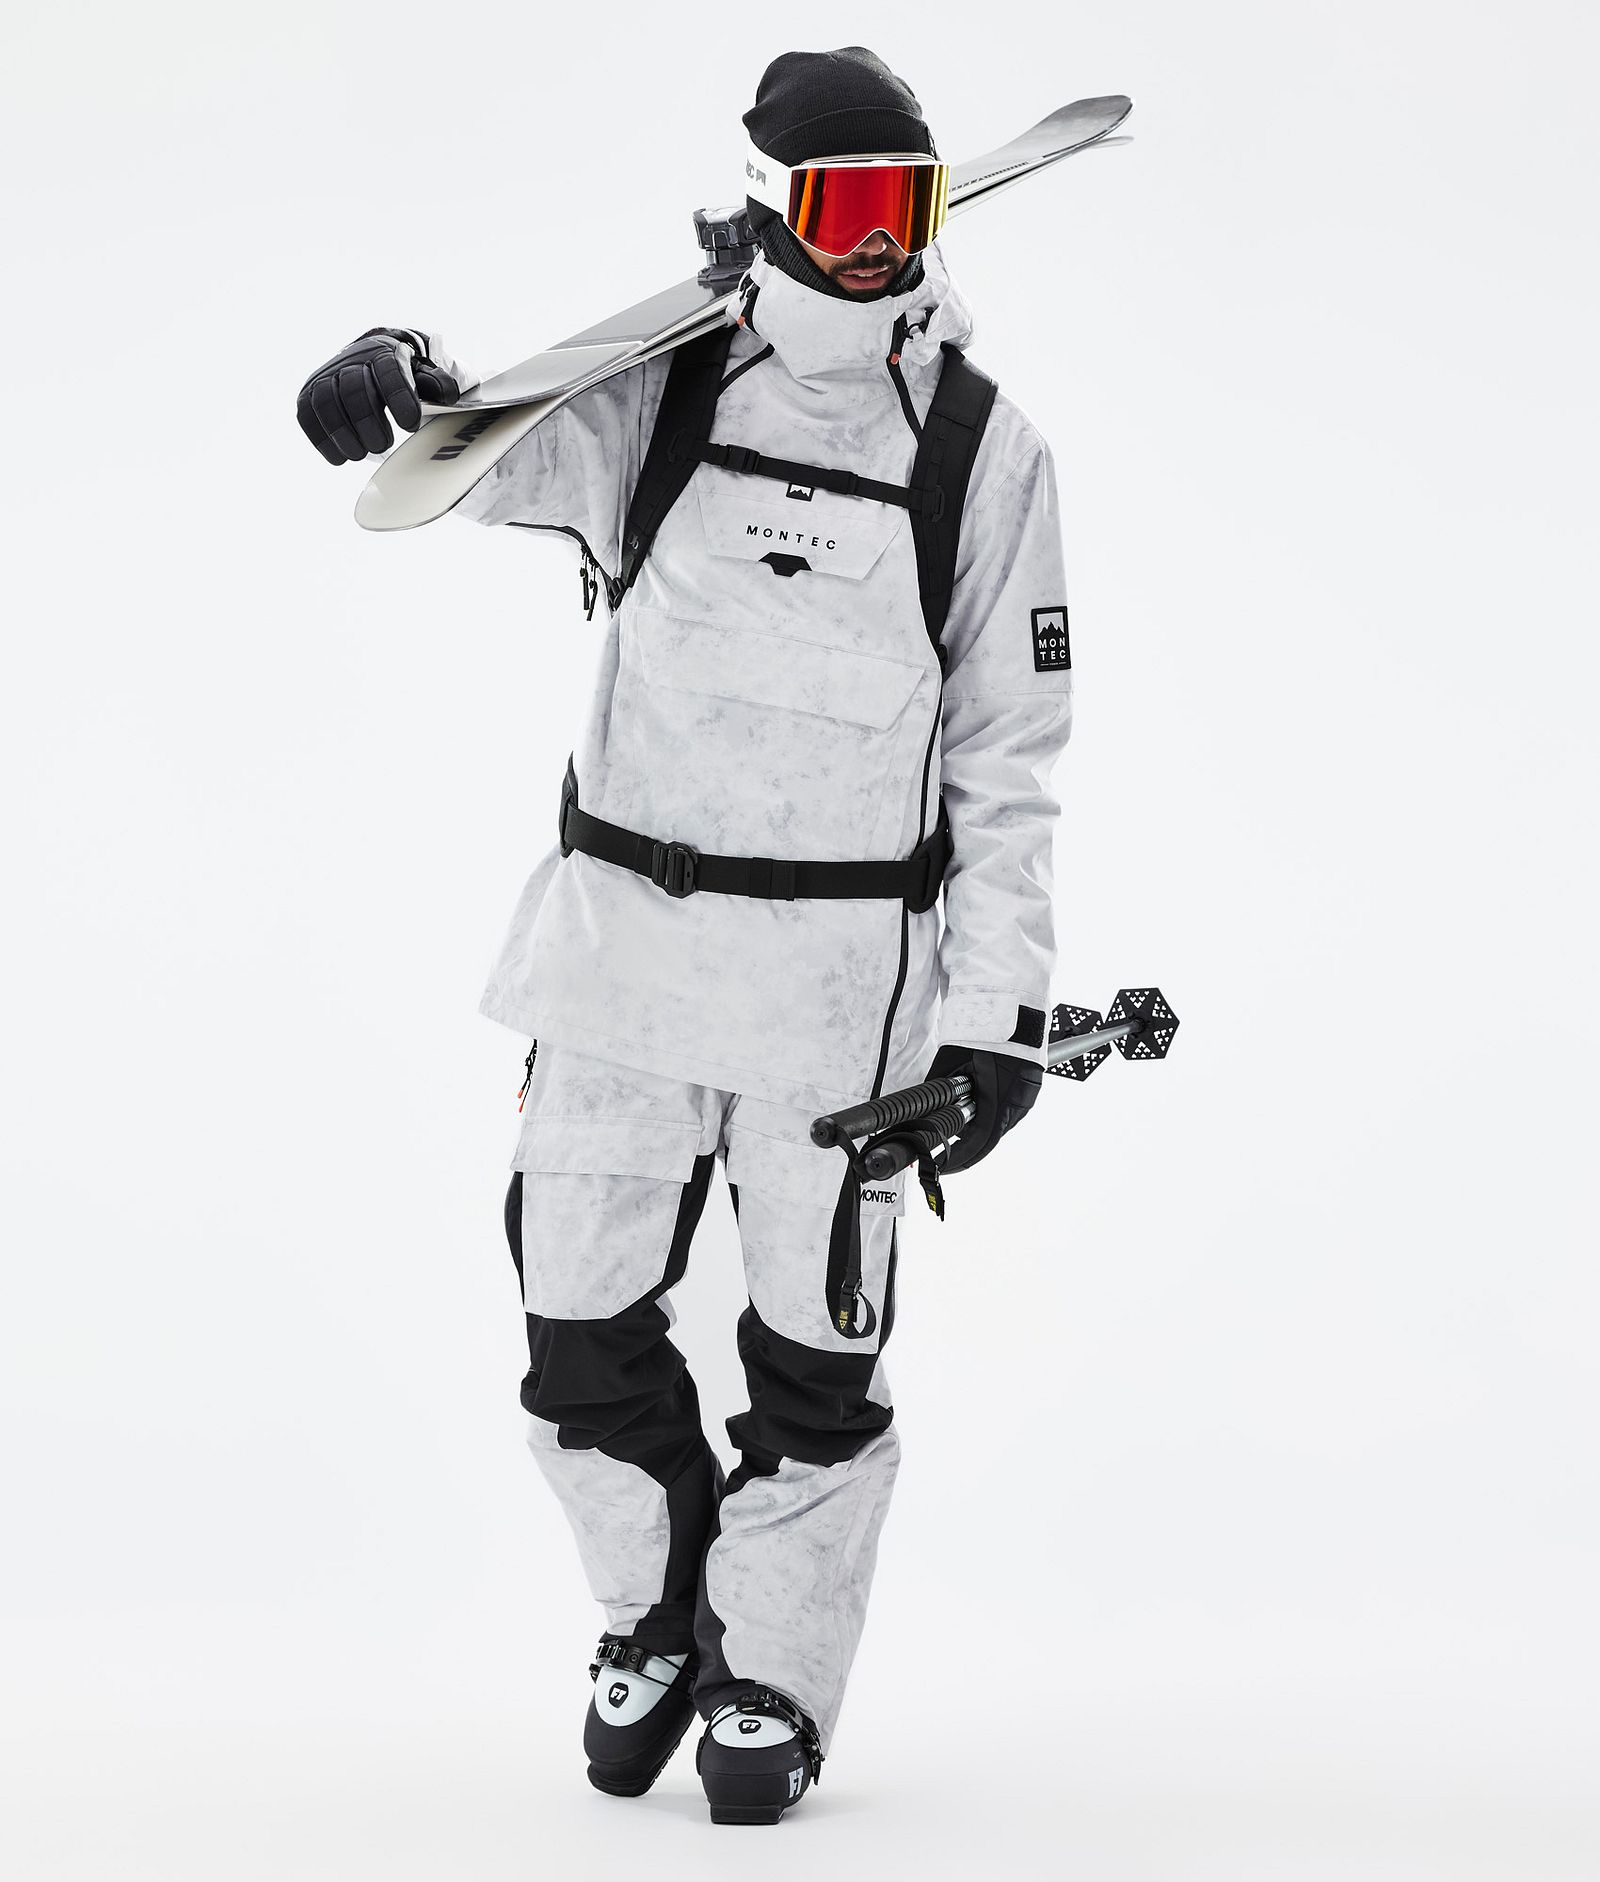 Montec Doom Ski Jacket Men White Tiedye